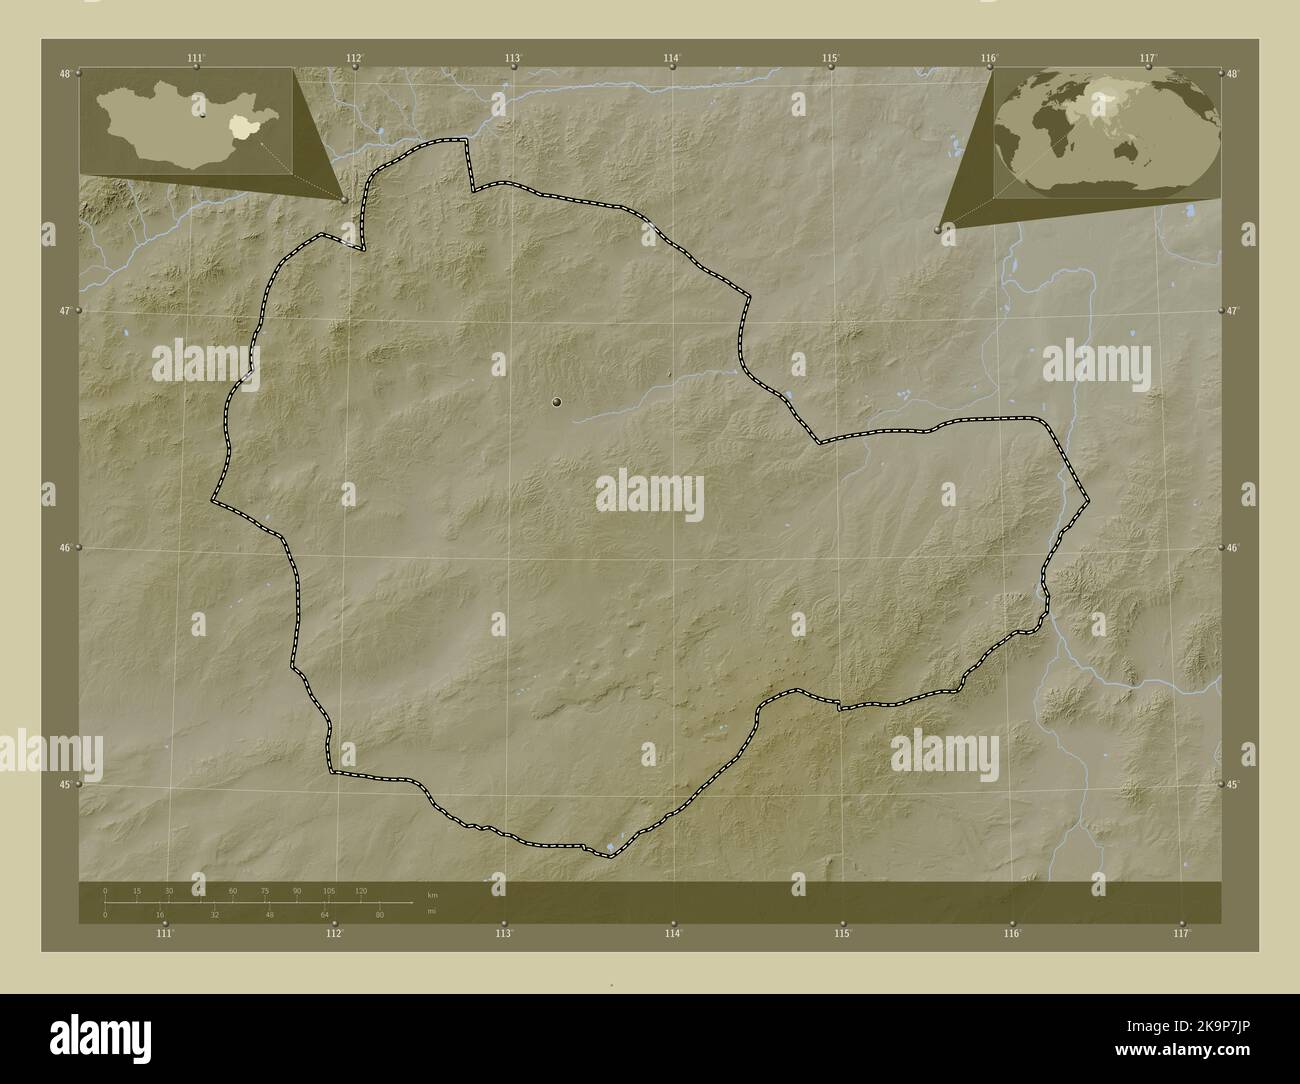 Suhbaatar, province de Mongolie. Carte d'altitude colorée en style wiki avec lacs et rivières. Lieux des principales villes de la région. Coin auxiliaire Banque D'Images